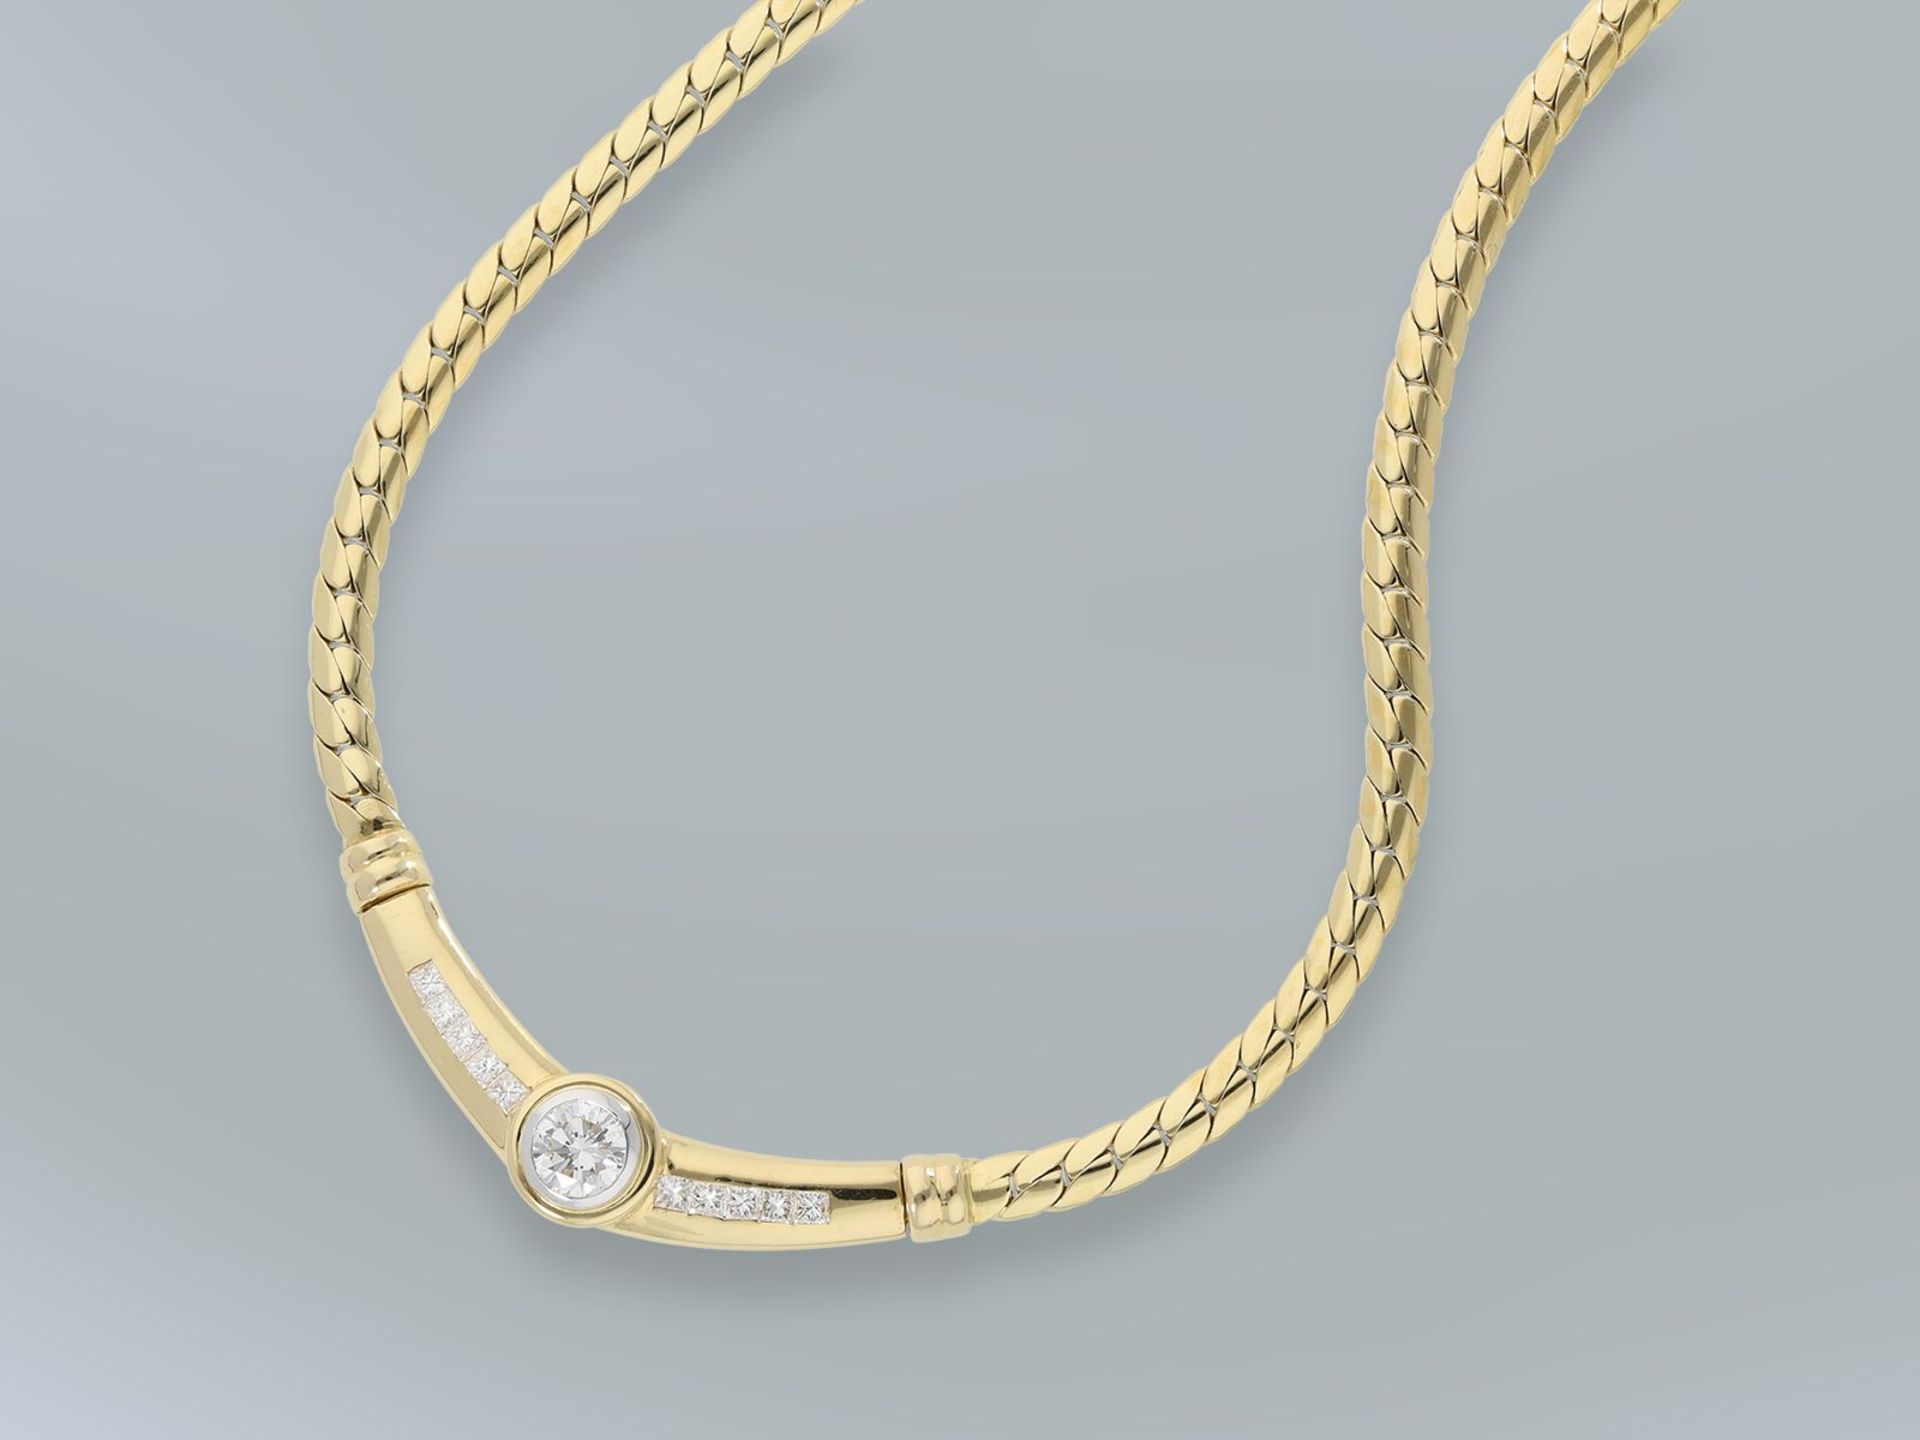 Kette/Collier: exklusives Brillantcollier aus 18K Gold mit hochwertigem Brillant/Diamantbesatz, - Bild 2 aus 2